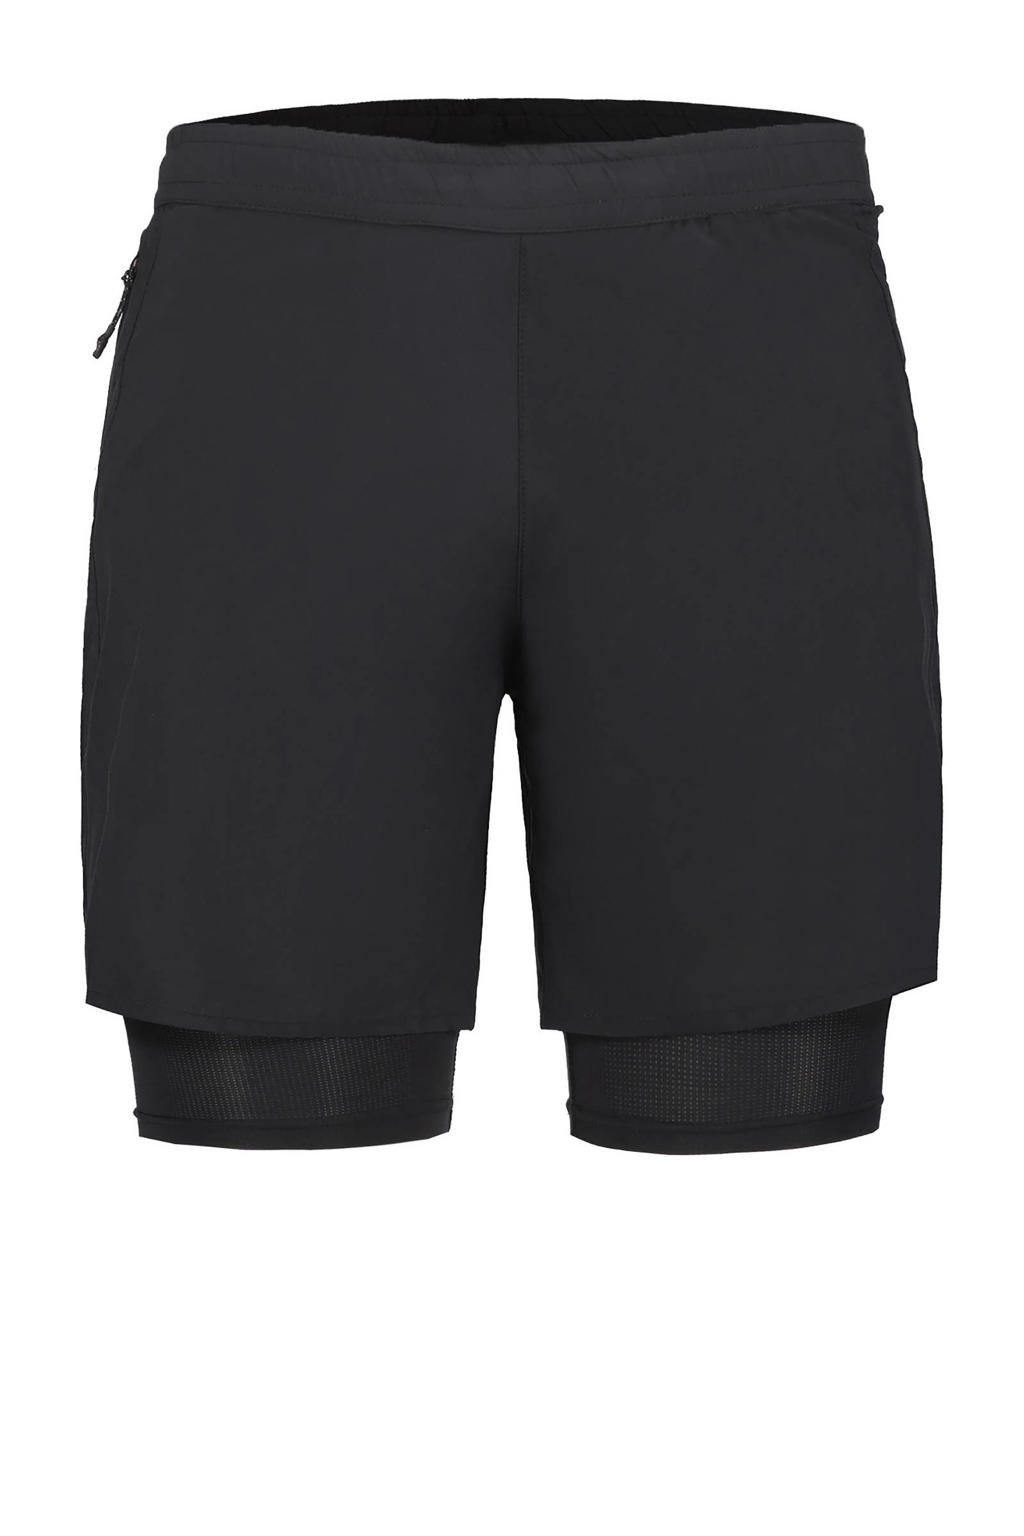 Zwarte heren Rukka hardloopshort Mentula van polyester met regular fit en elastische tailleband met koord